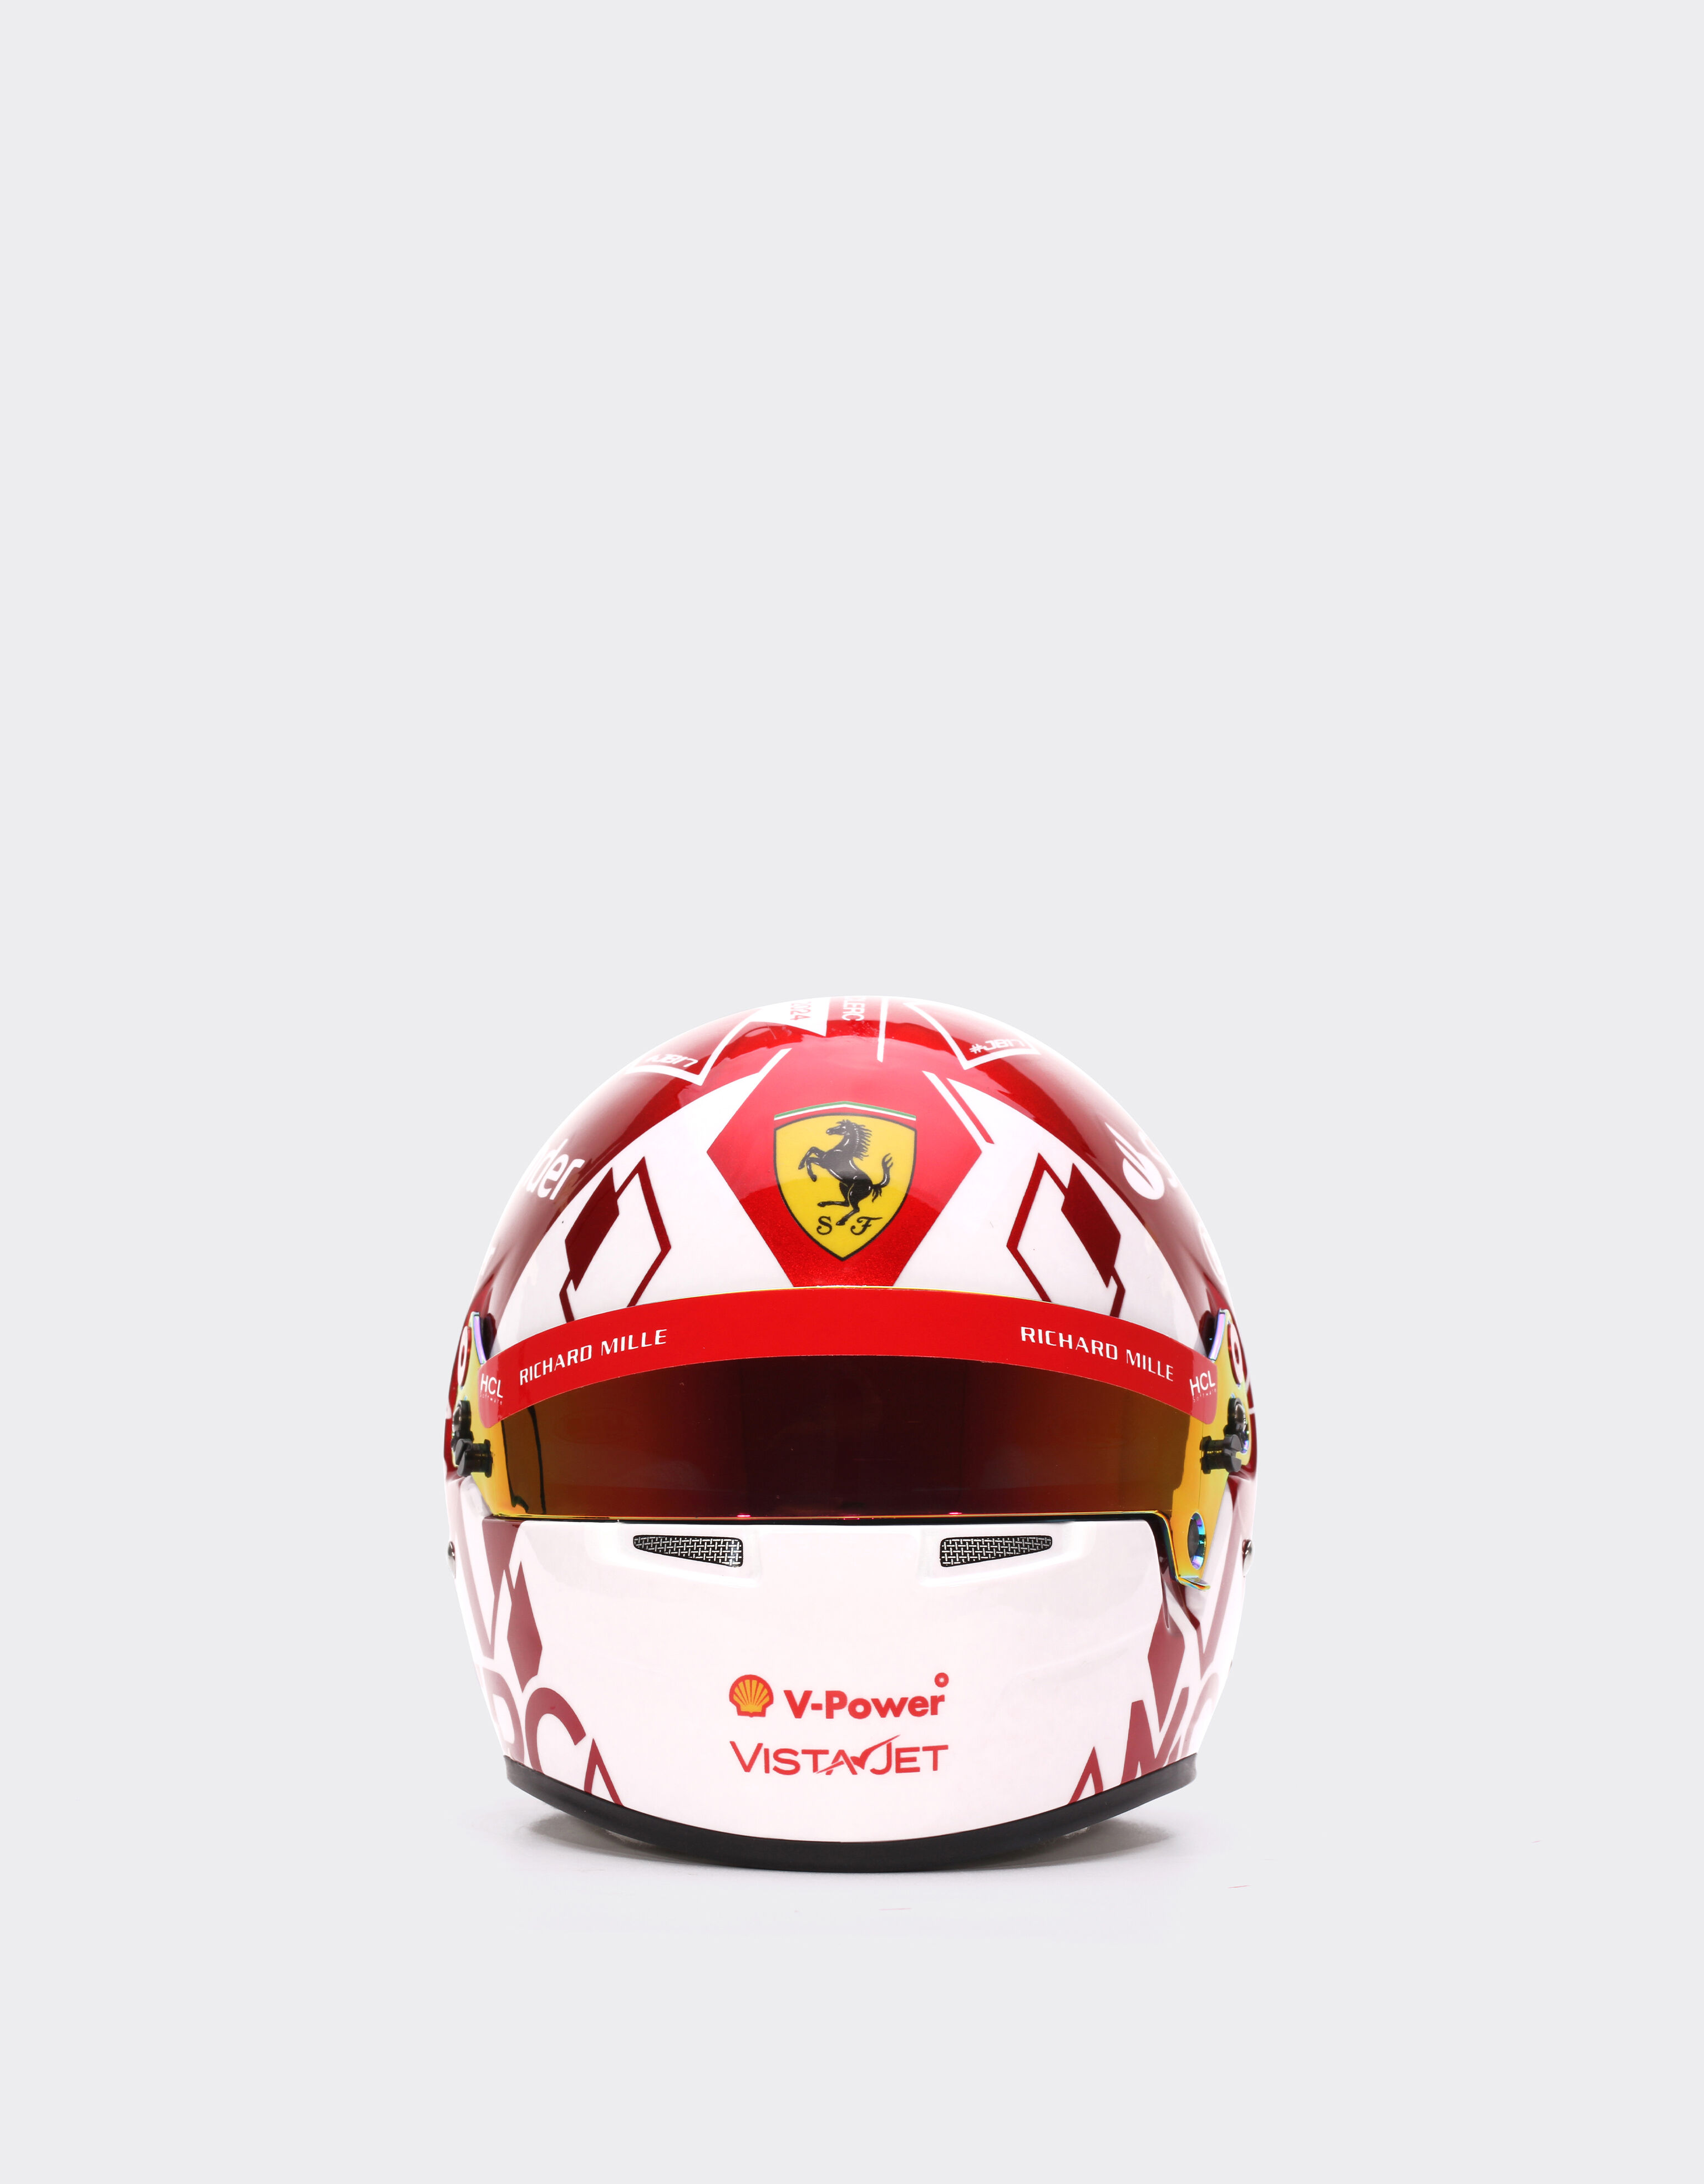 Ferrari ミニヘルメット ルクレール 1:2スケール - モナコスペシャルエディション レッド F1354f